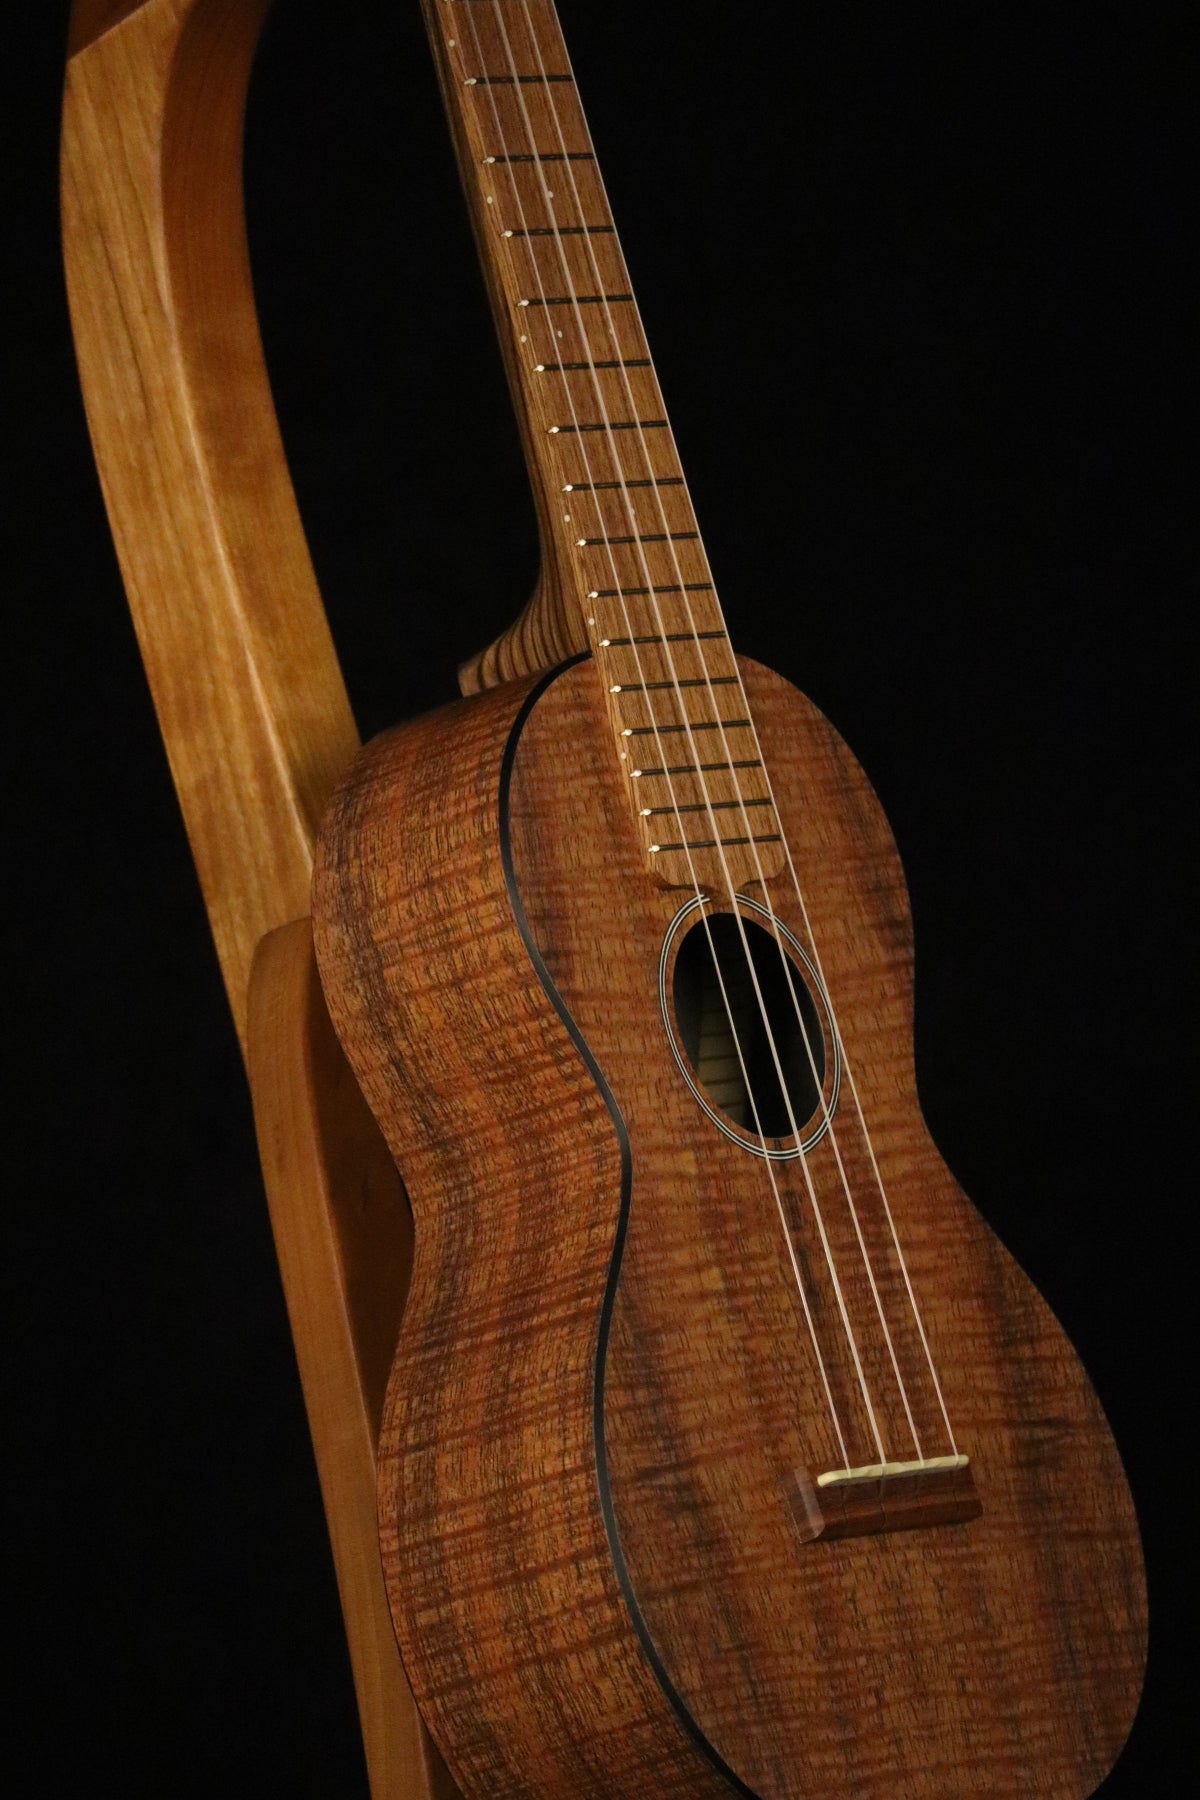 Folding cherry wood ukulele floor stand closeup front image with Martin ukulele